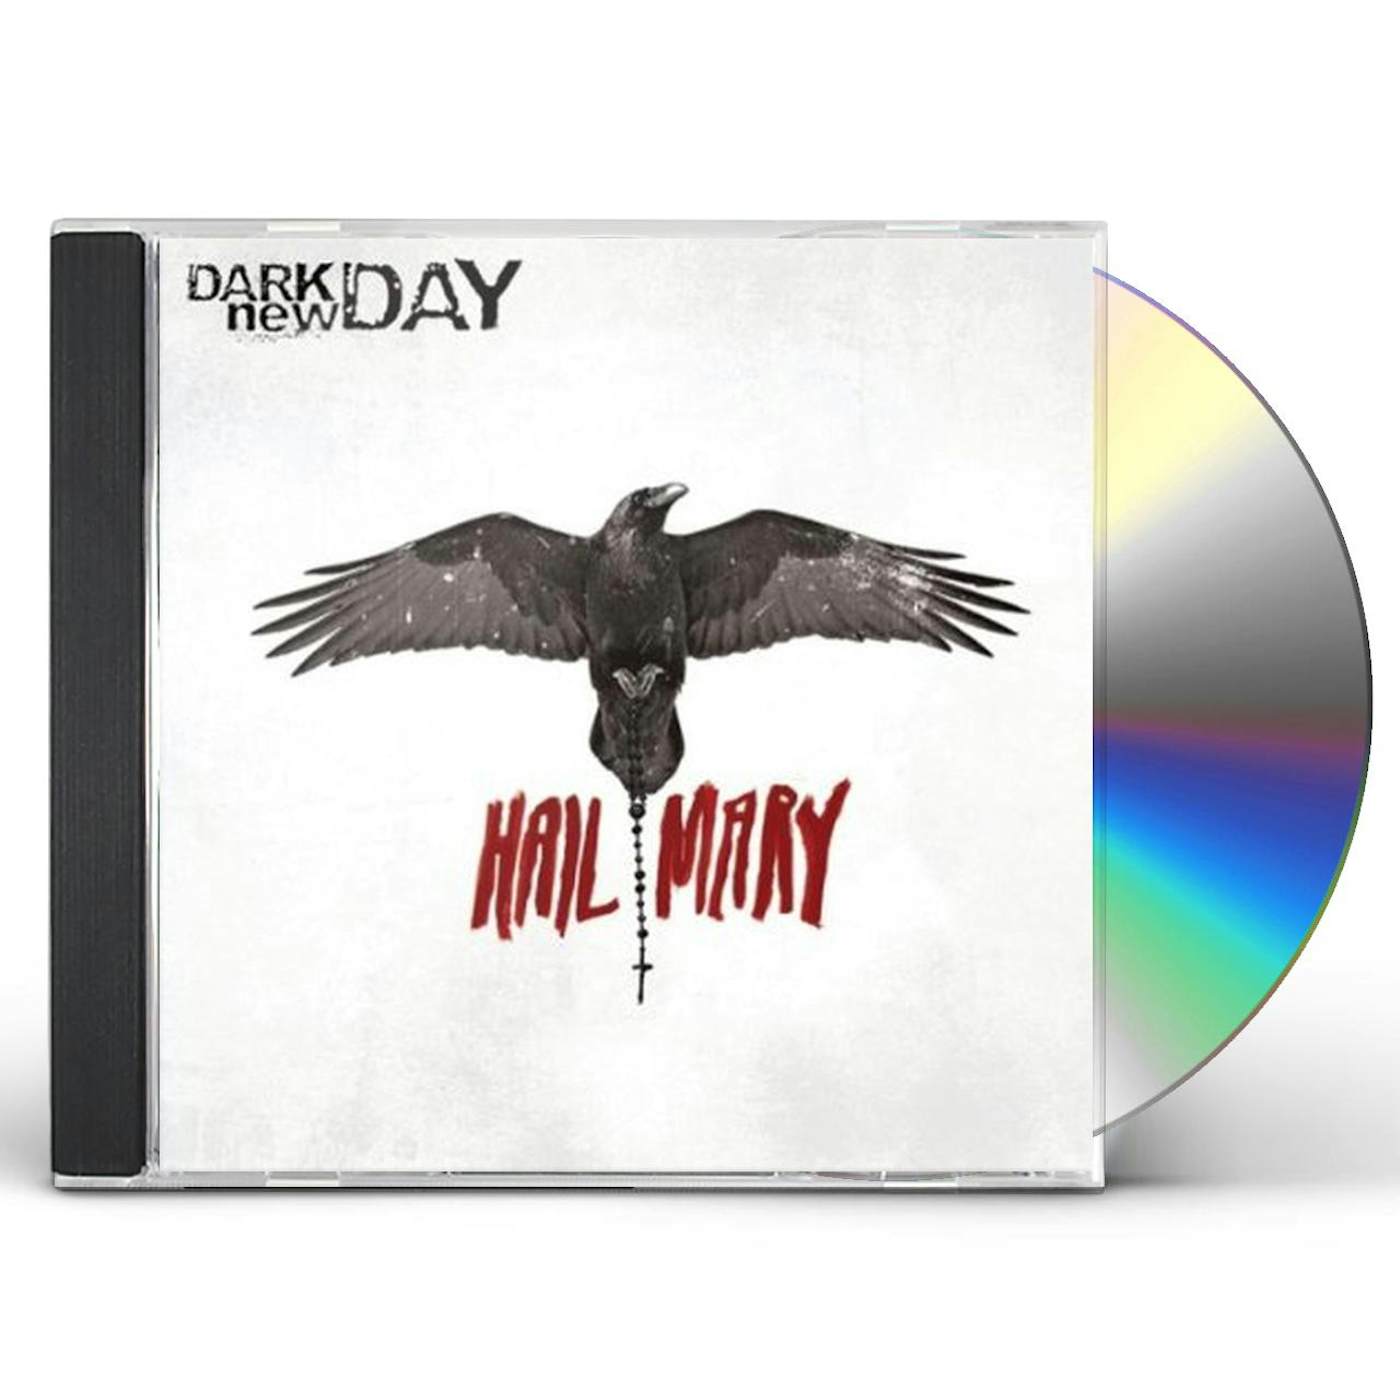 Dark new Day HAIL MARY CD